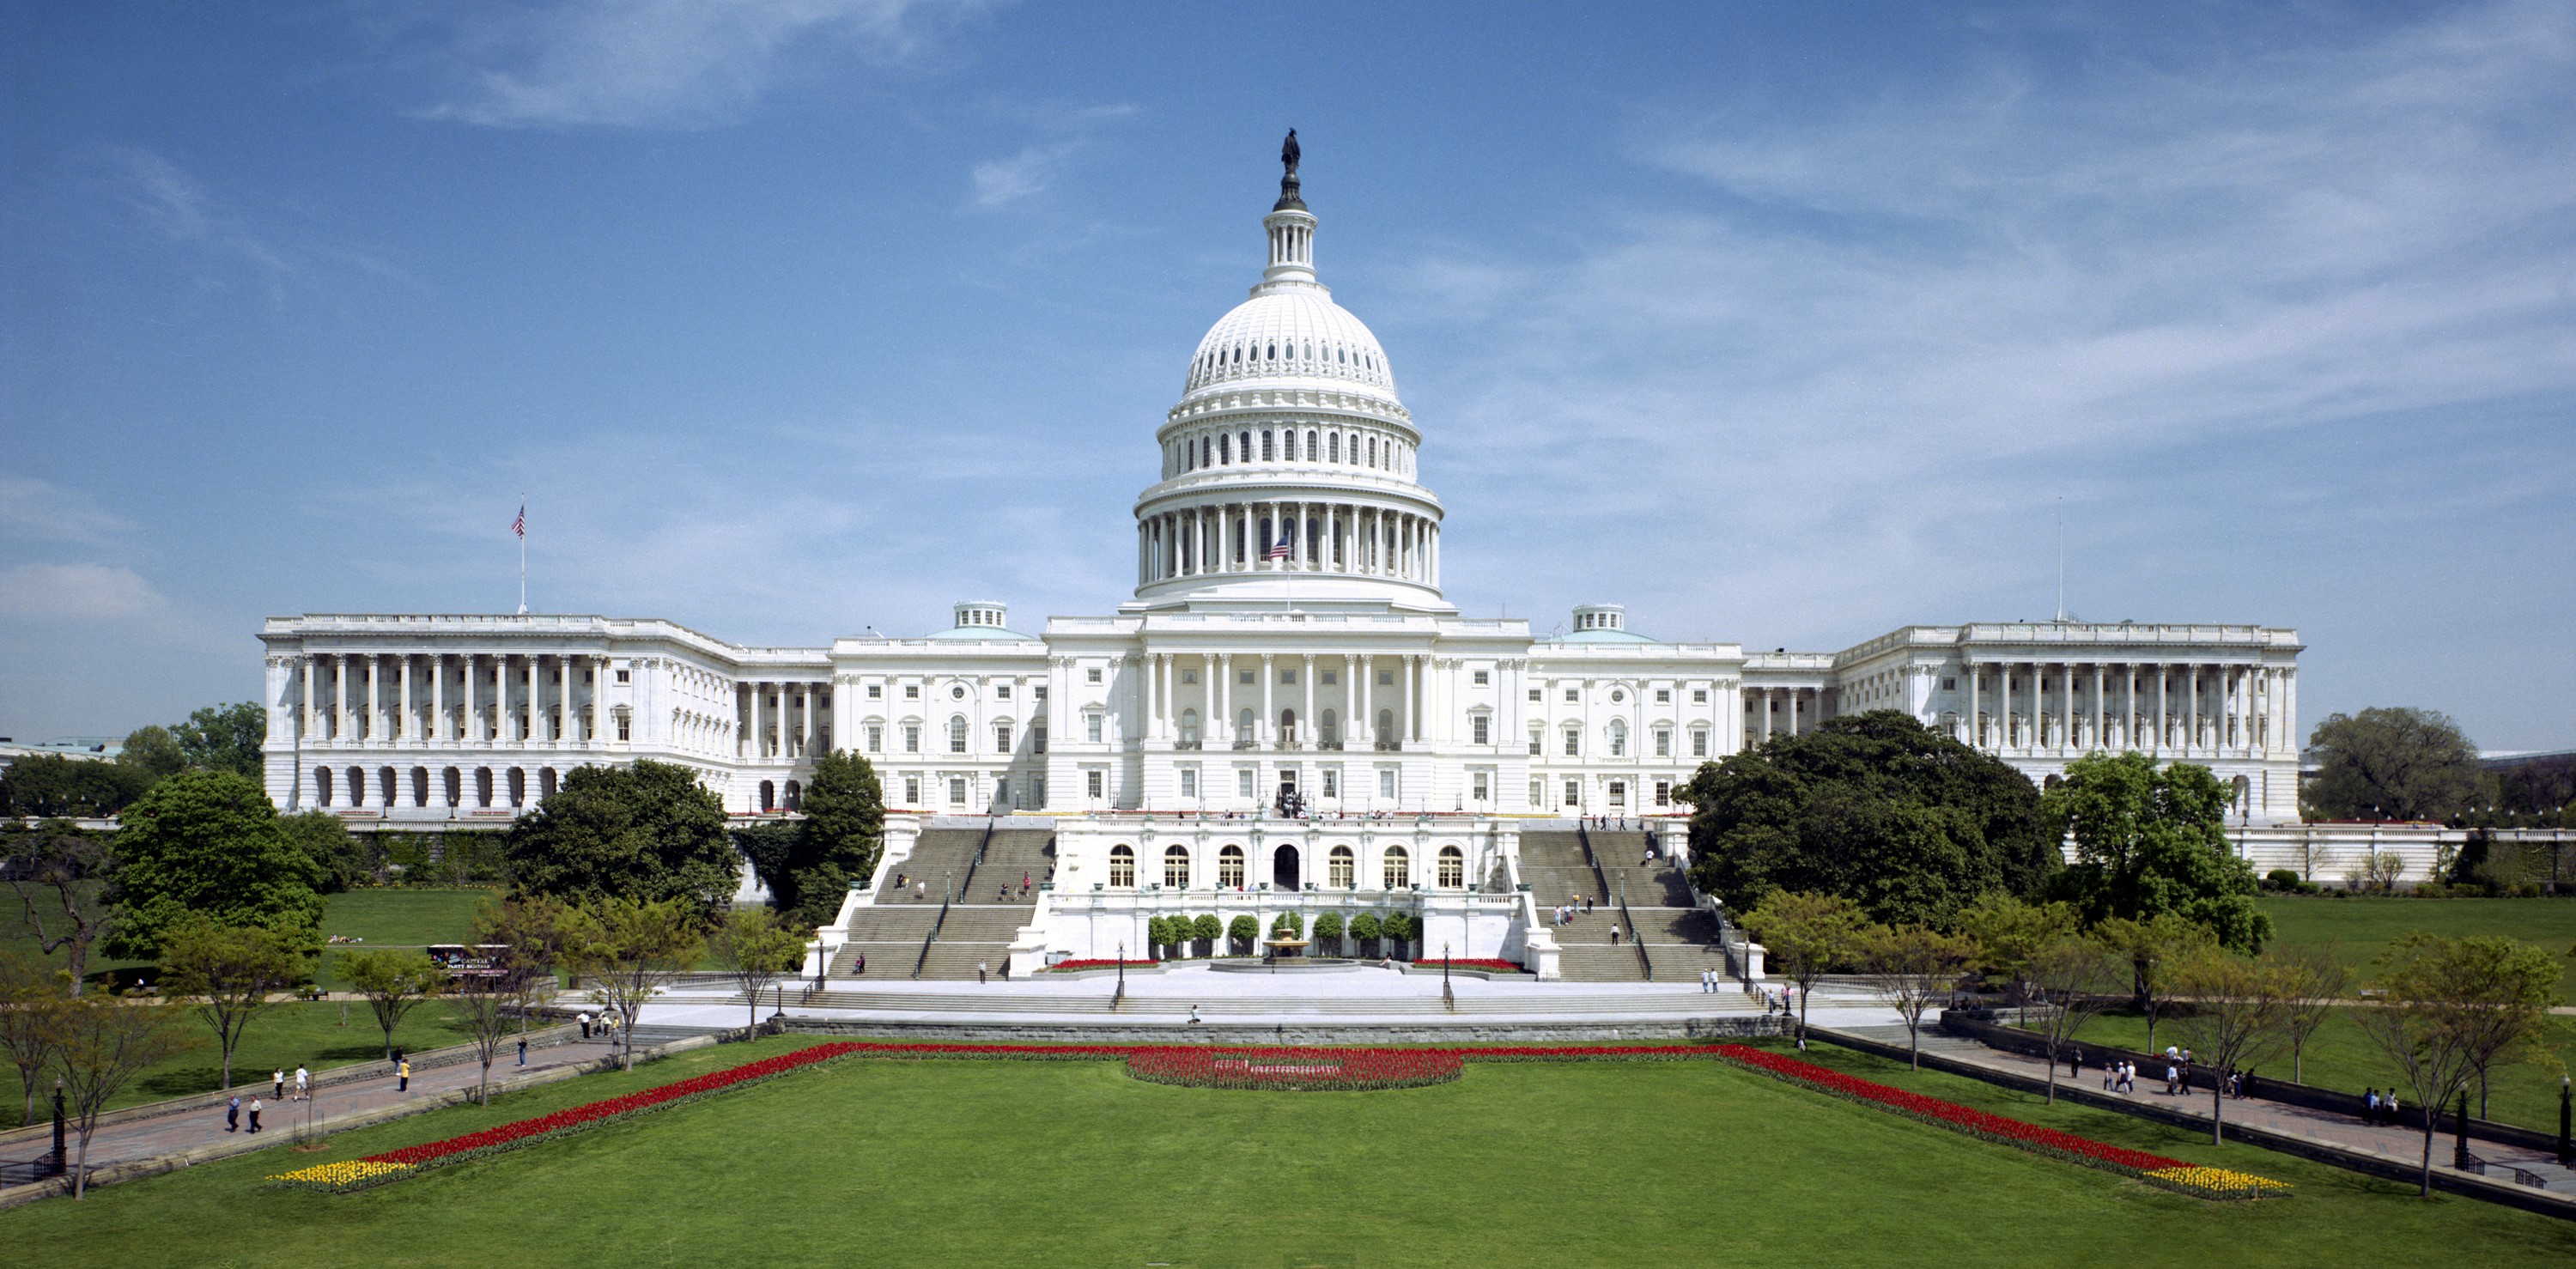 POLL-Half of Republicans believe false accounts of deadly U.S. Capitol riot-Reuters/Ipsos poll